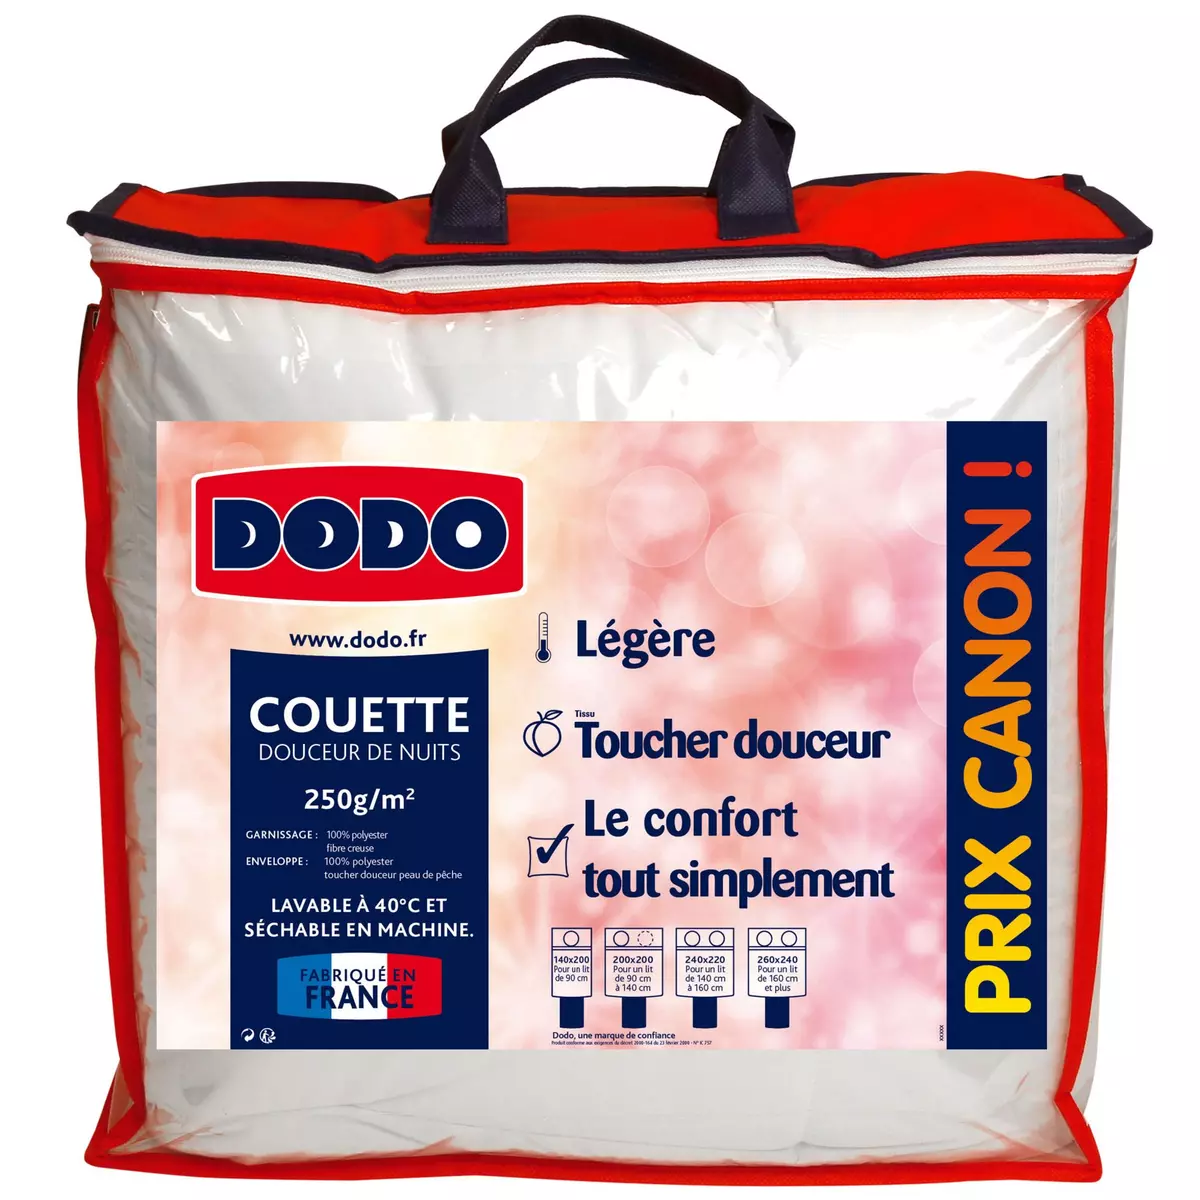 DODO Couette légère en polyester DOUCEUR DE NUITS 250 g/m²